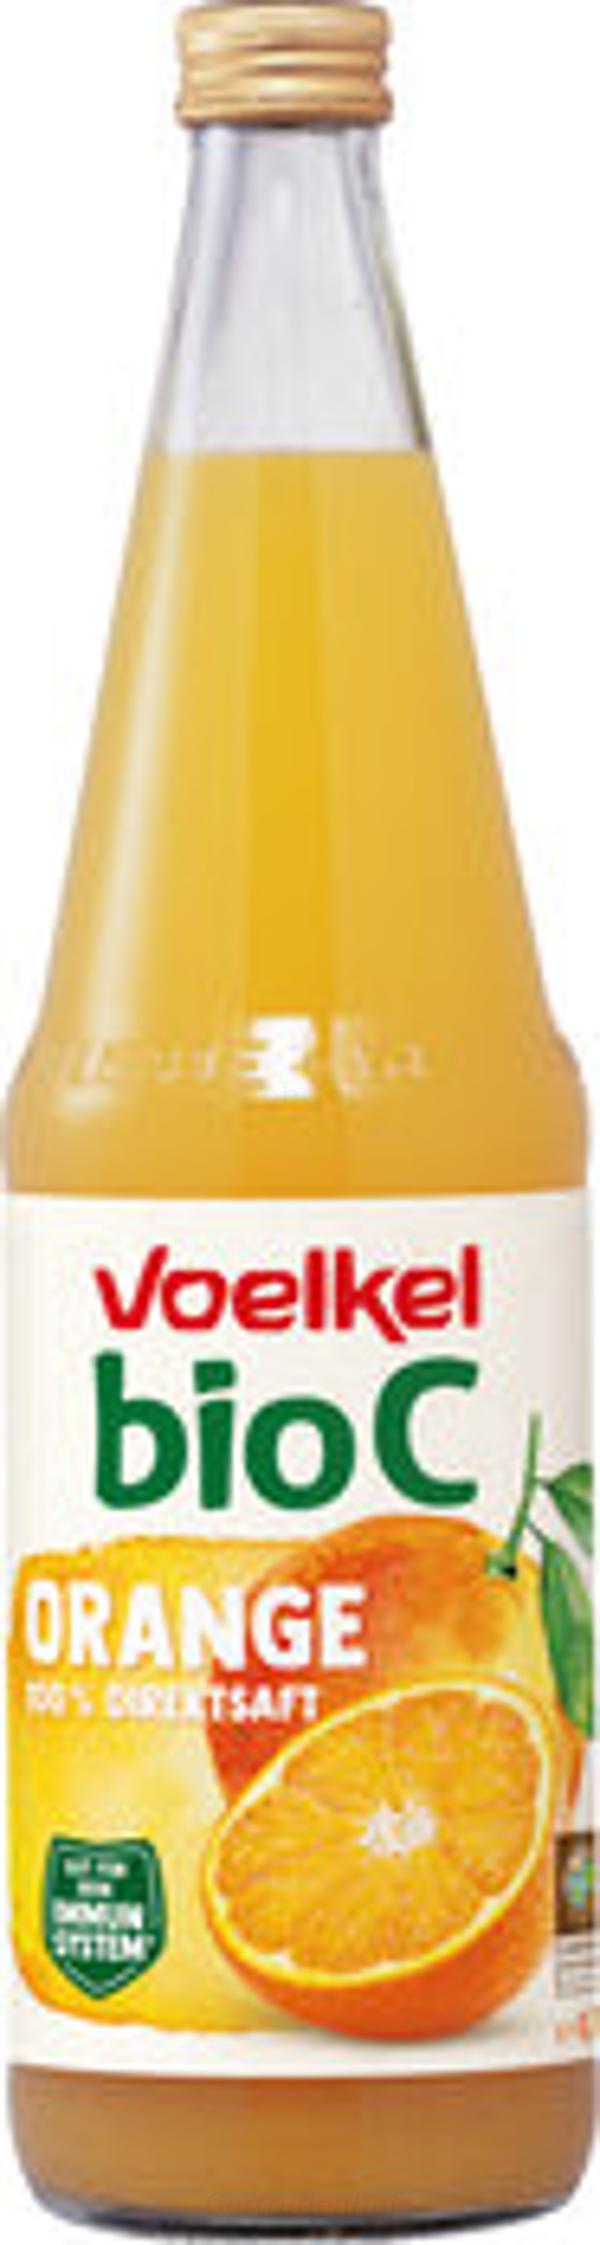 Produktfoto zu Bio C Orangen-Direktsaft (VOE)